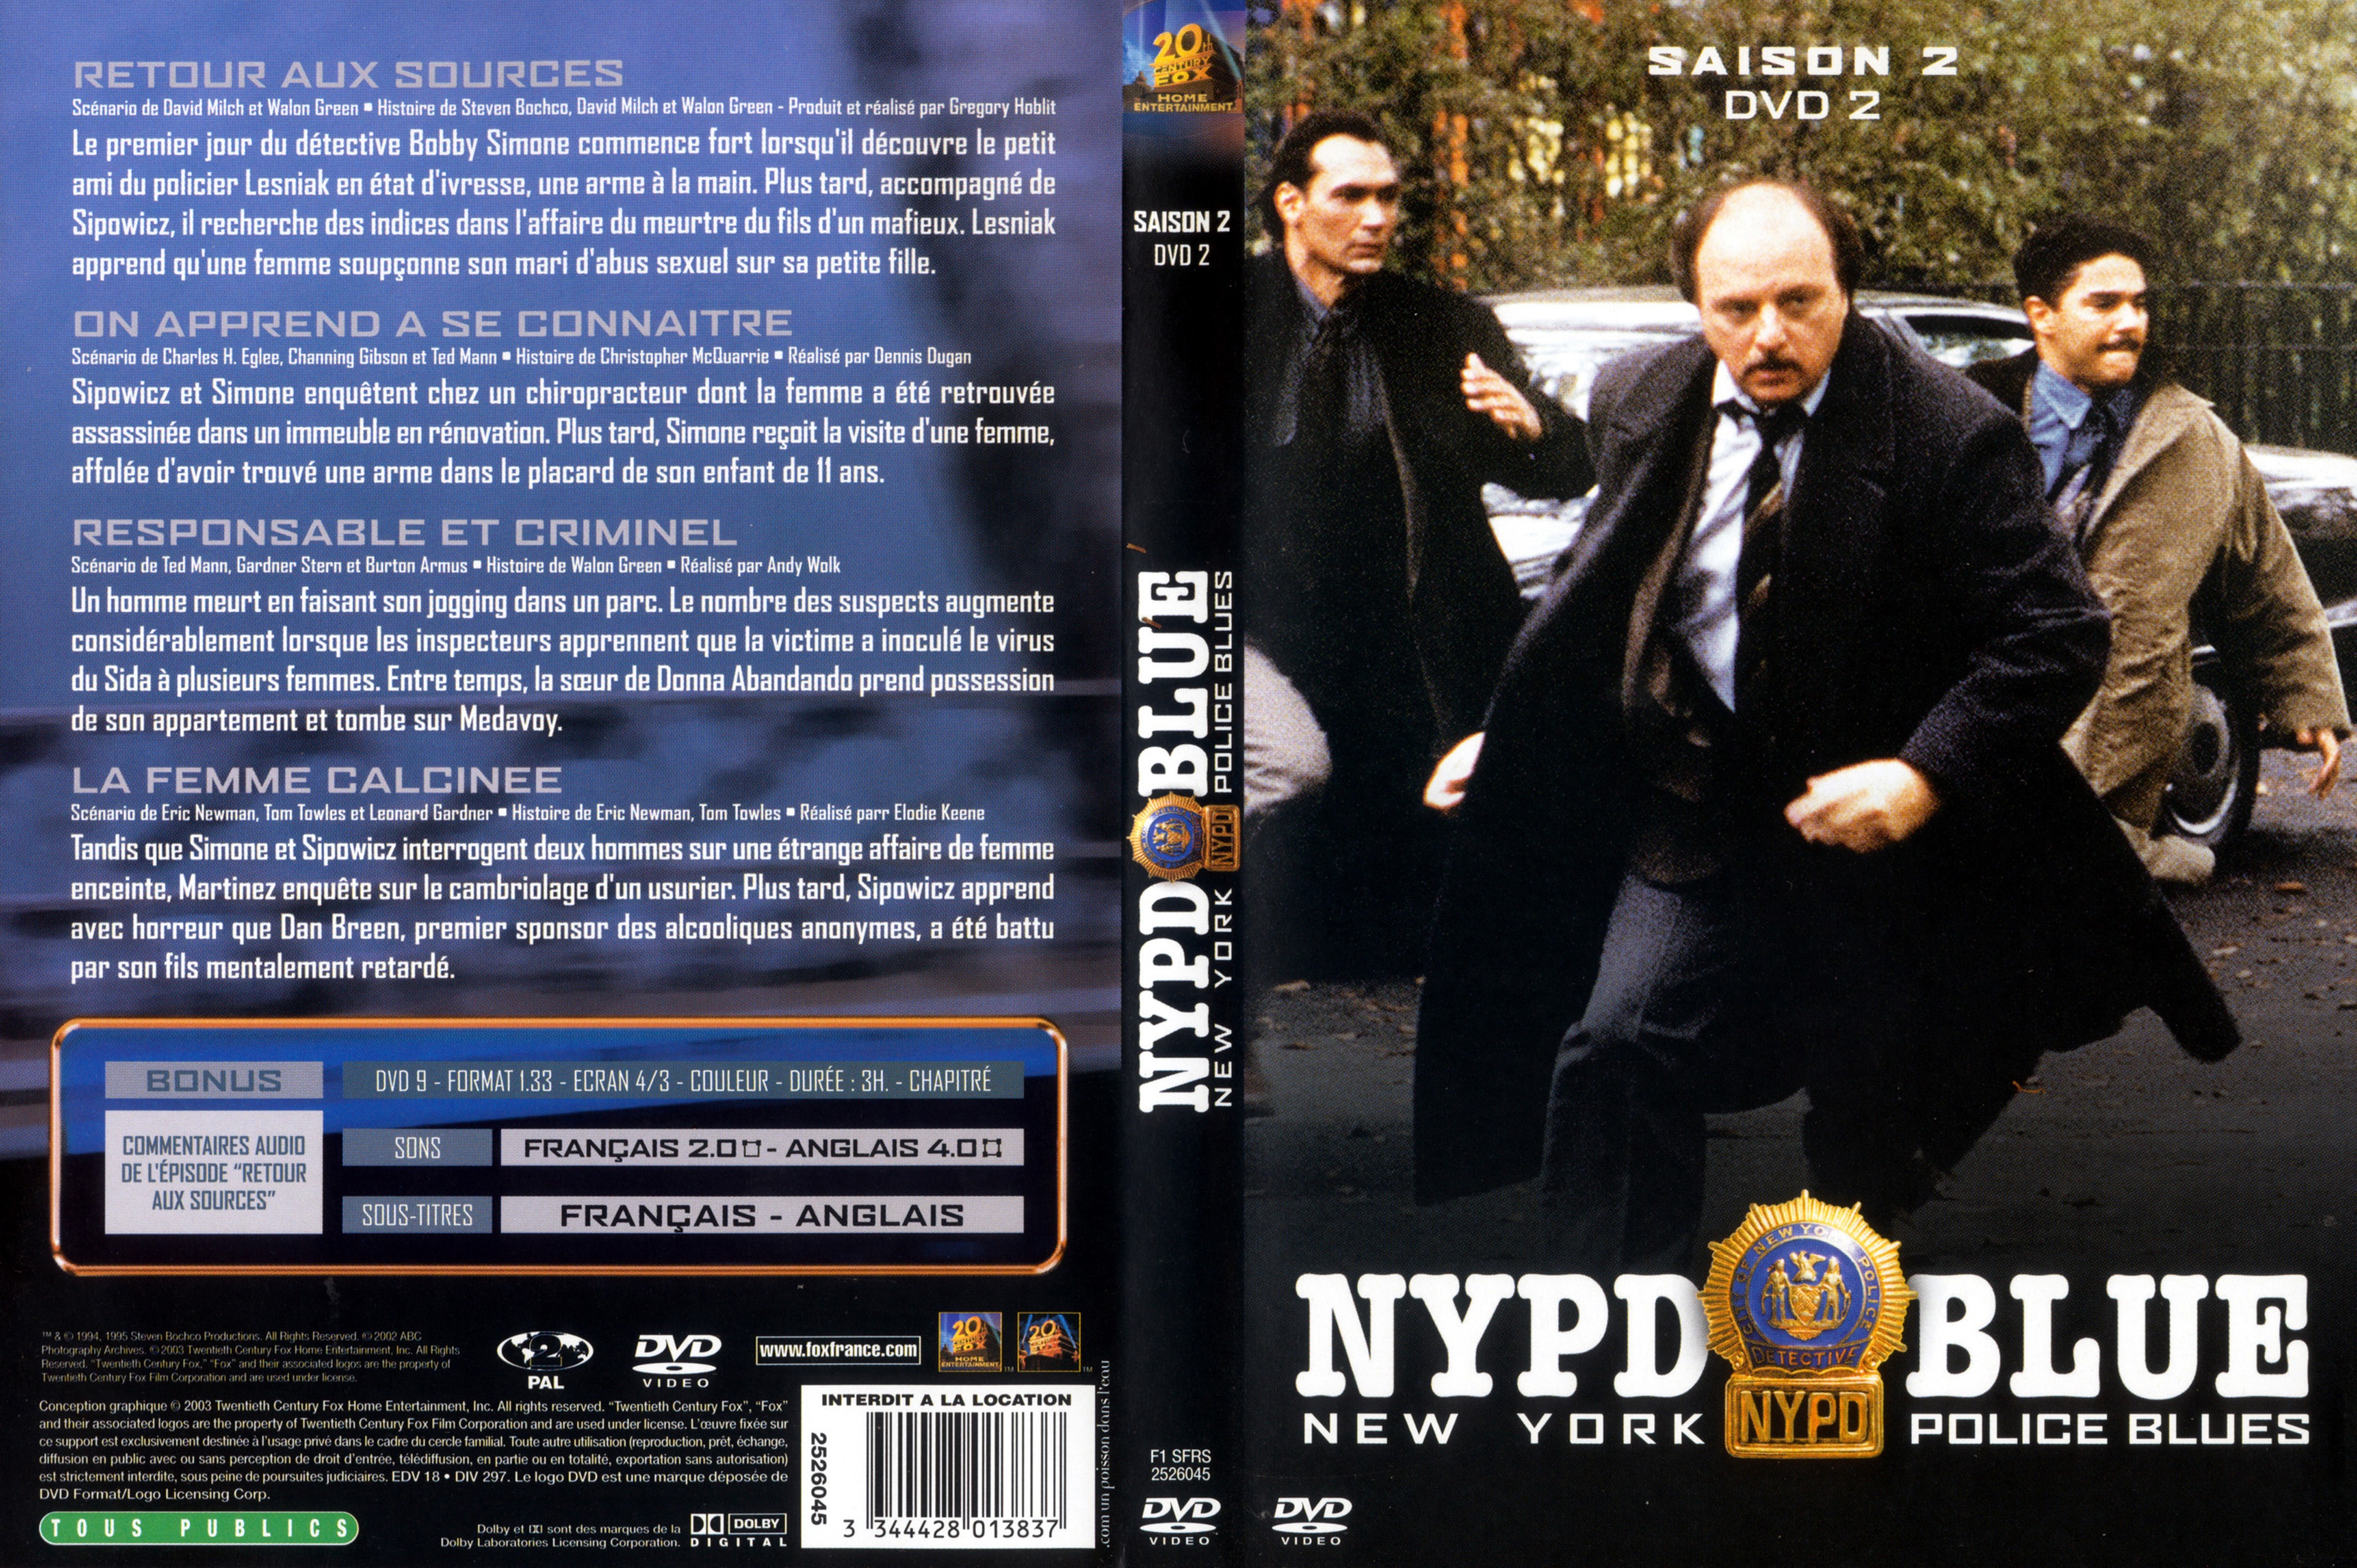 Jaquette DVD NYPD Blue saison 02 dvd 02